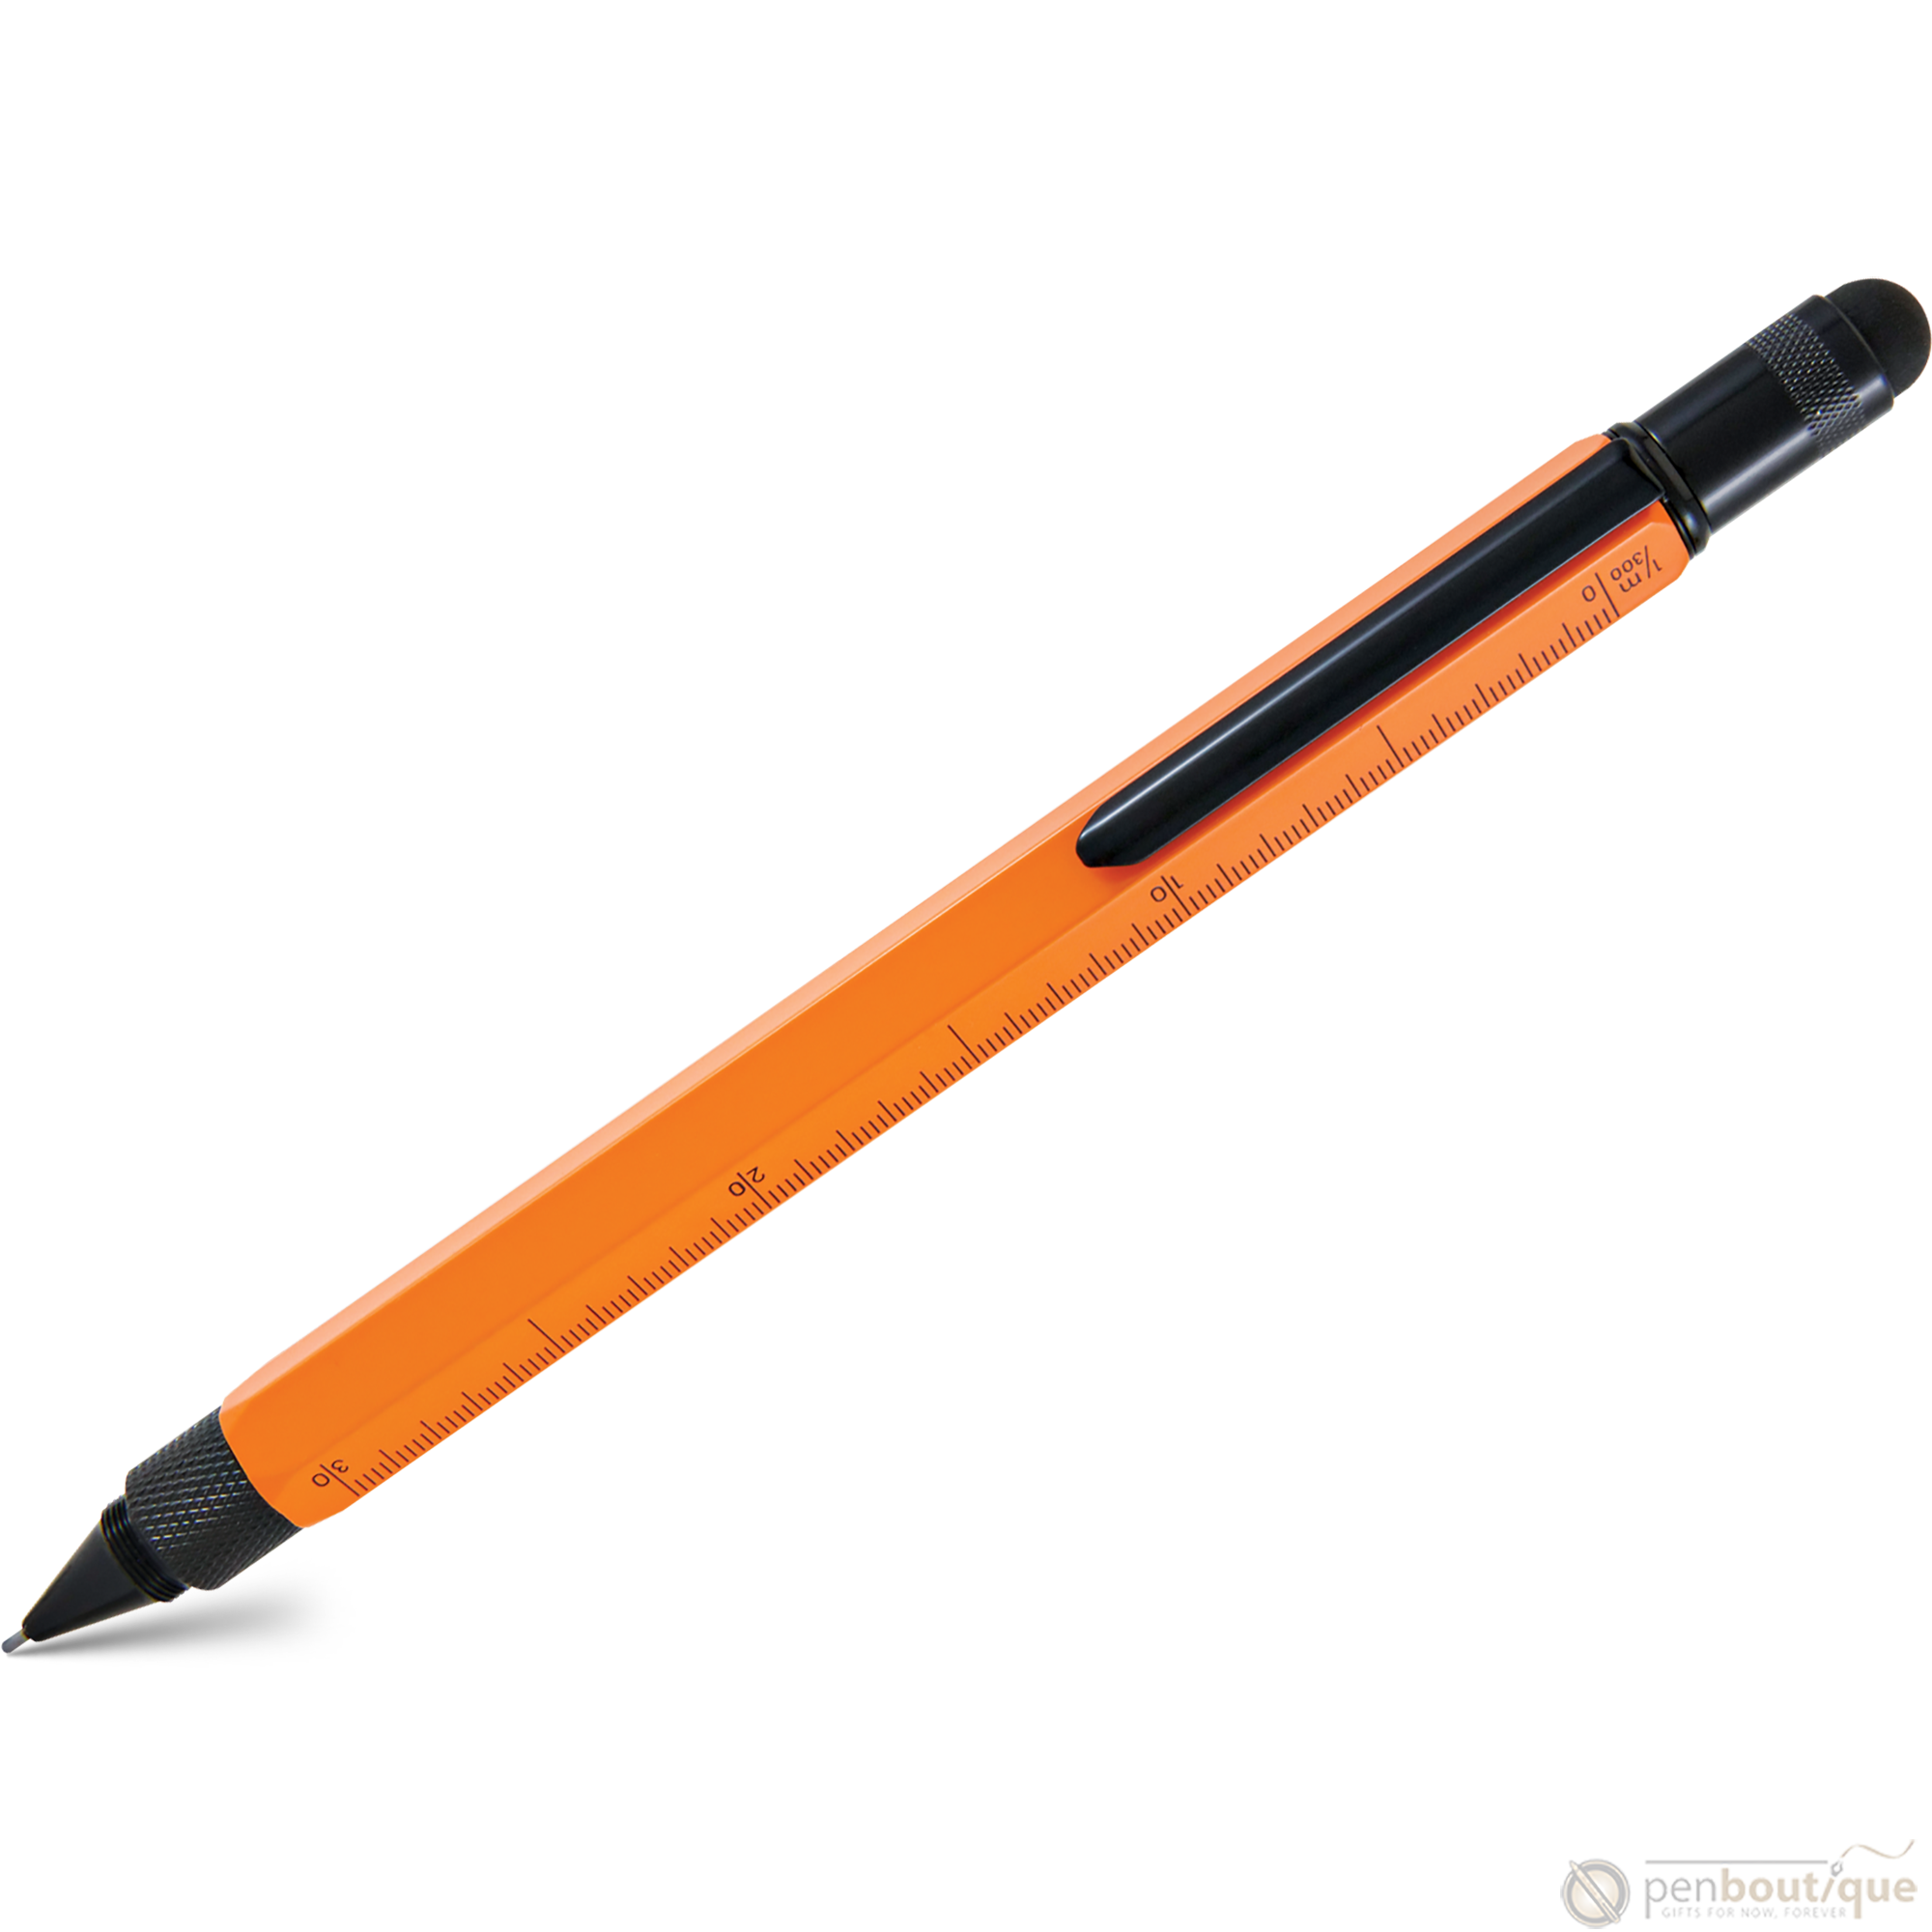 Monteverde Tool 0.9mm Pencil-Pen Boutique Ltd